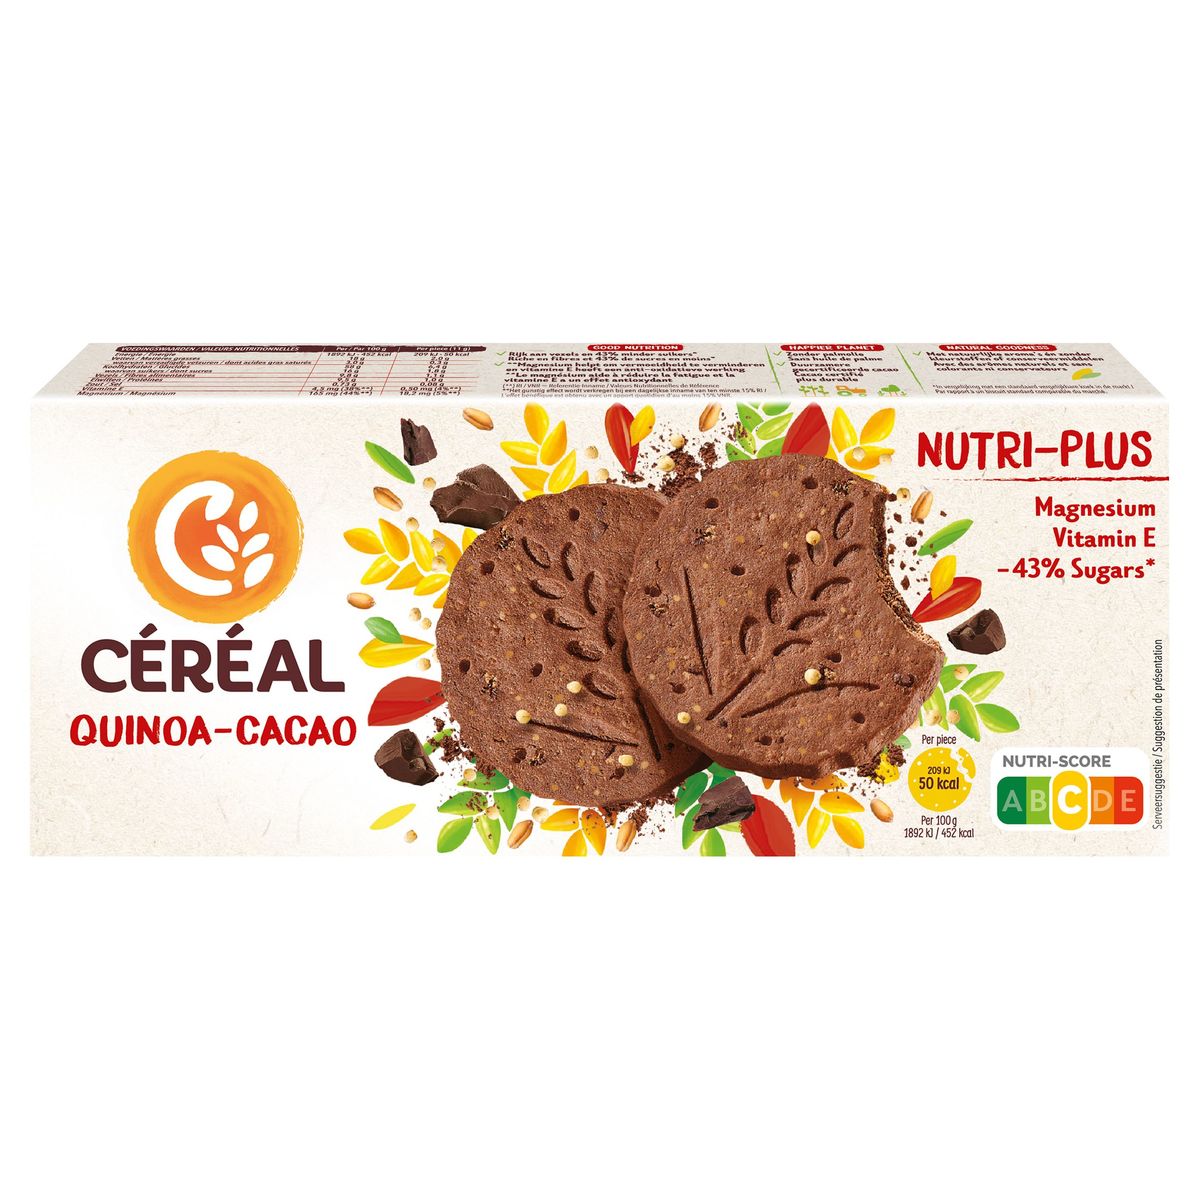 Céréal Nutri-Plus Koekjes Quinoa - Cacao 3 x 4 Koekjes 132 g